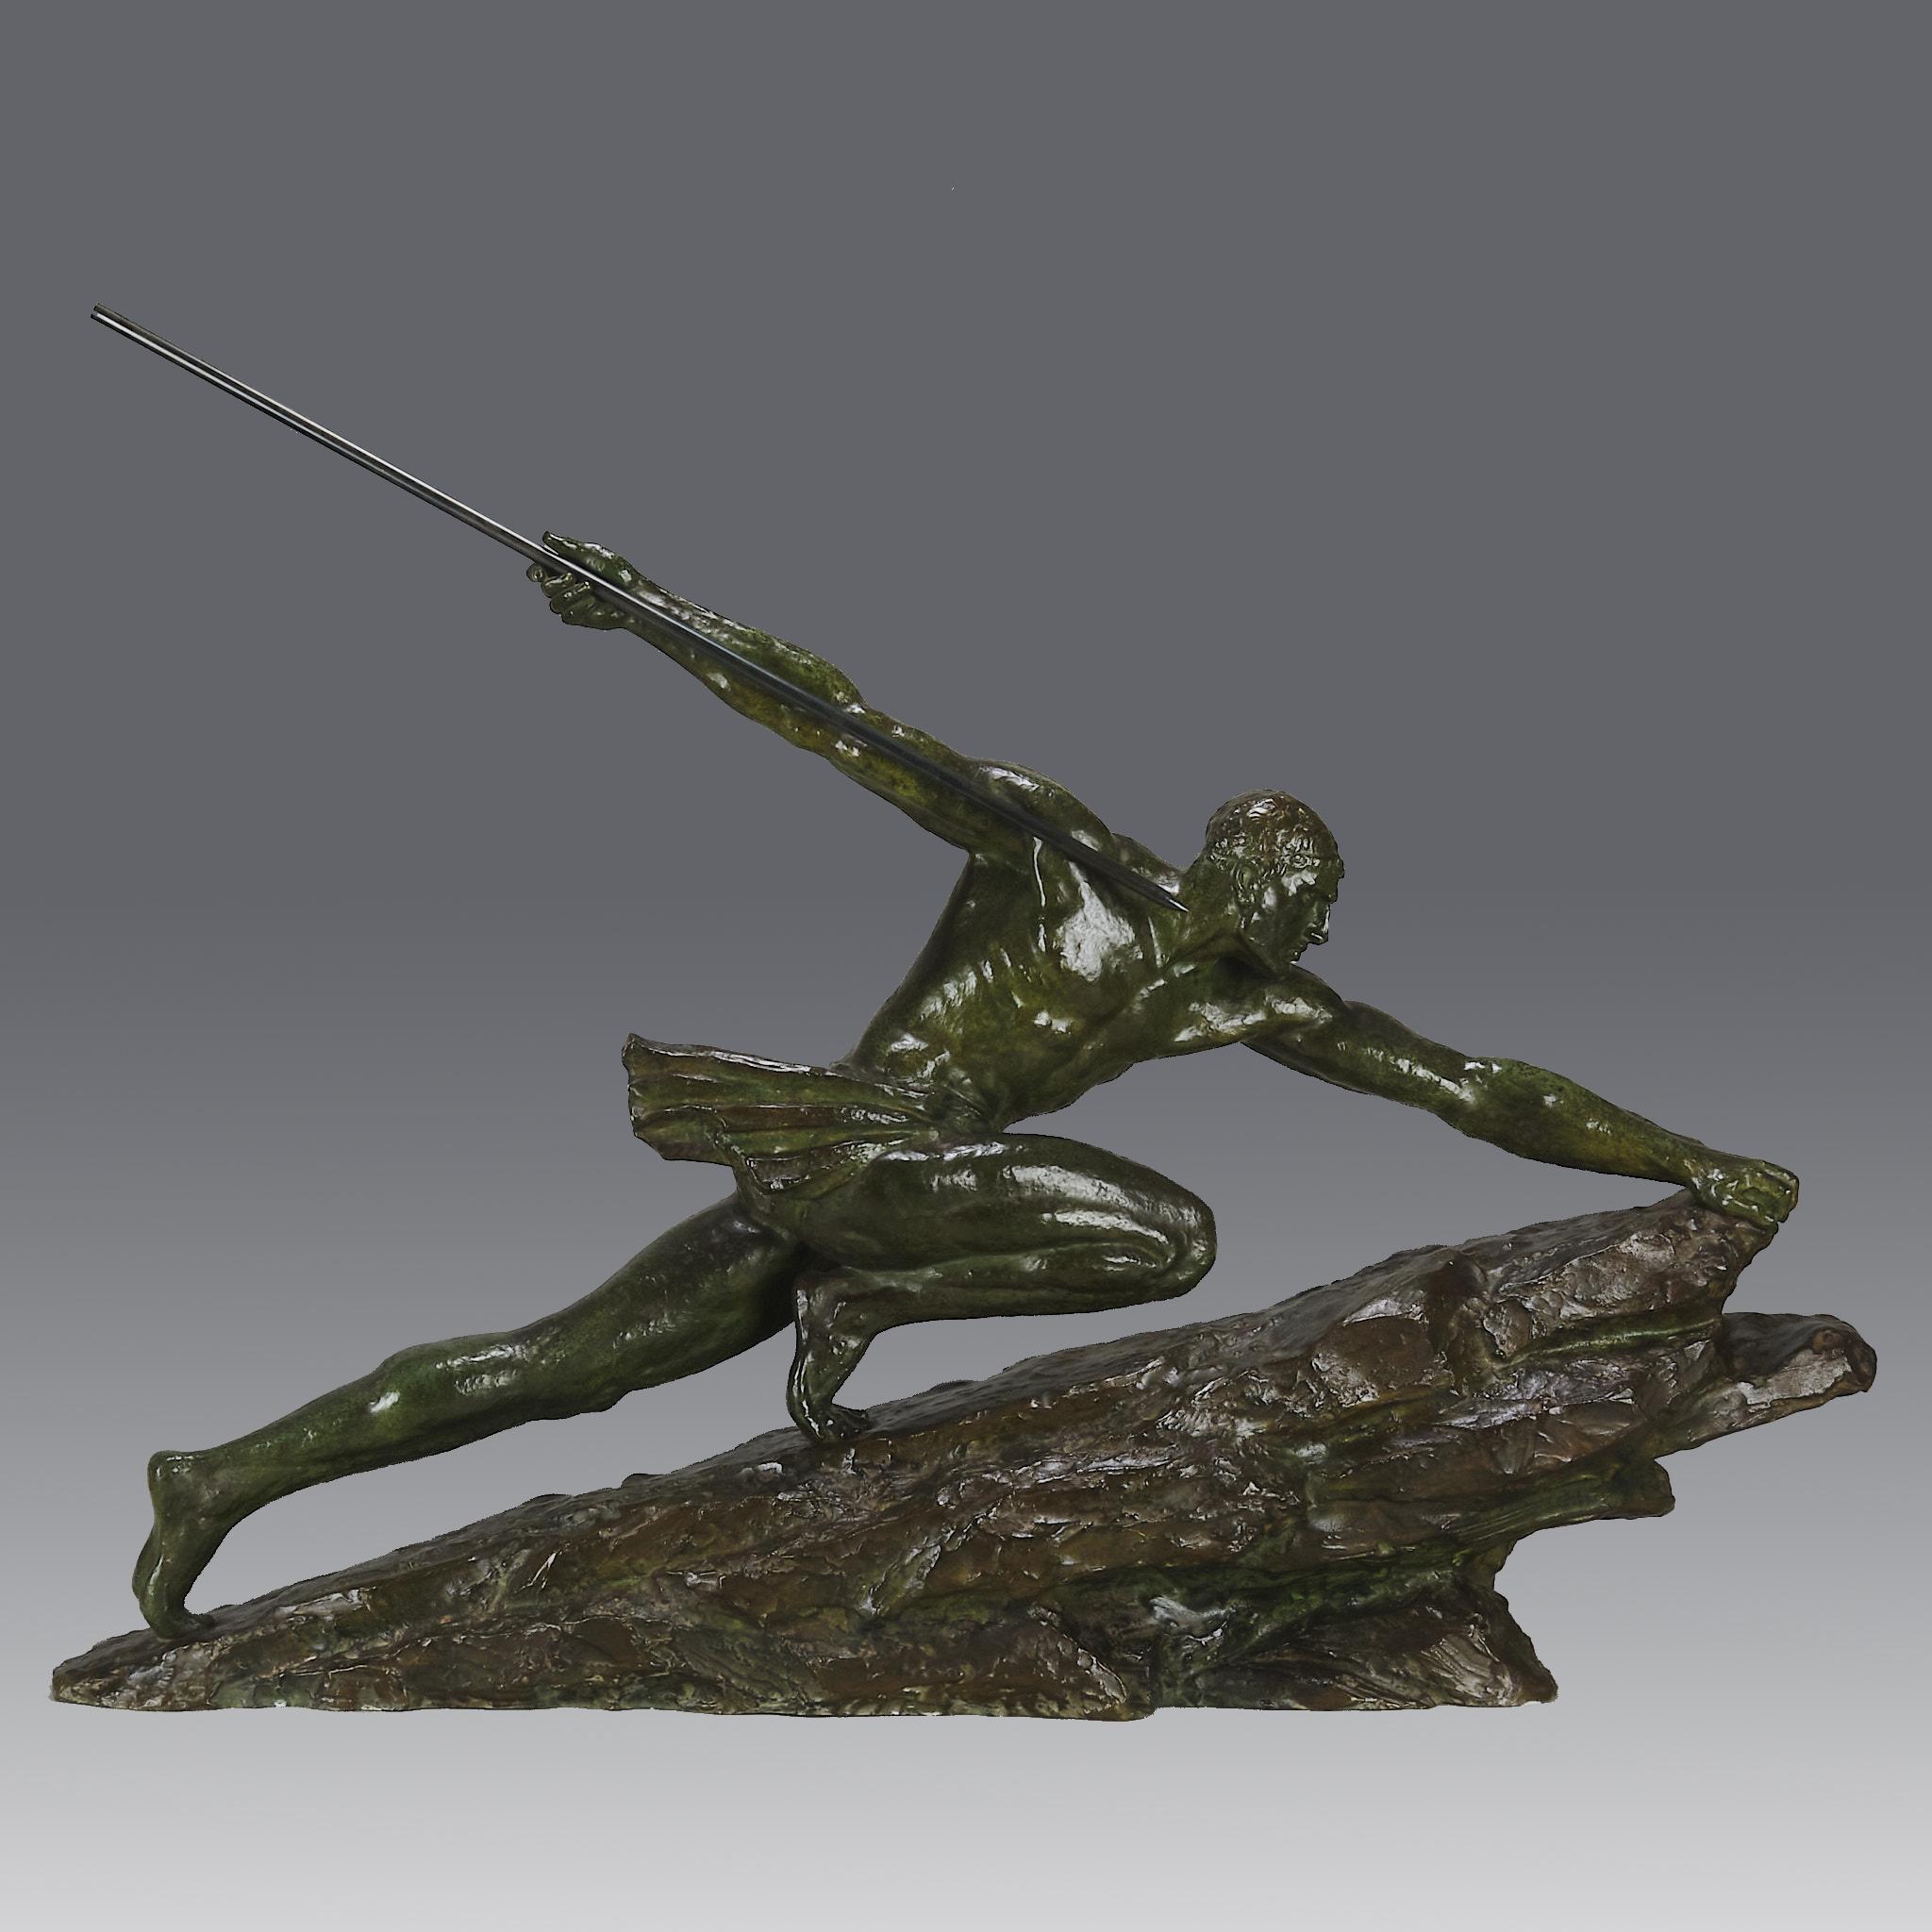 Grande sculpture en bronze emblématique de l'Art déco représentant un homme fort et athlétique dans une pose puissante, tenant une longue lance à la main alors qu'il escalade un grand rocher. Le bronze, d'une couleur verte étonnamment riche et d'une